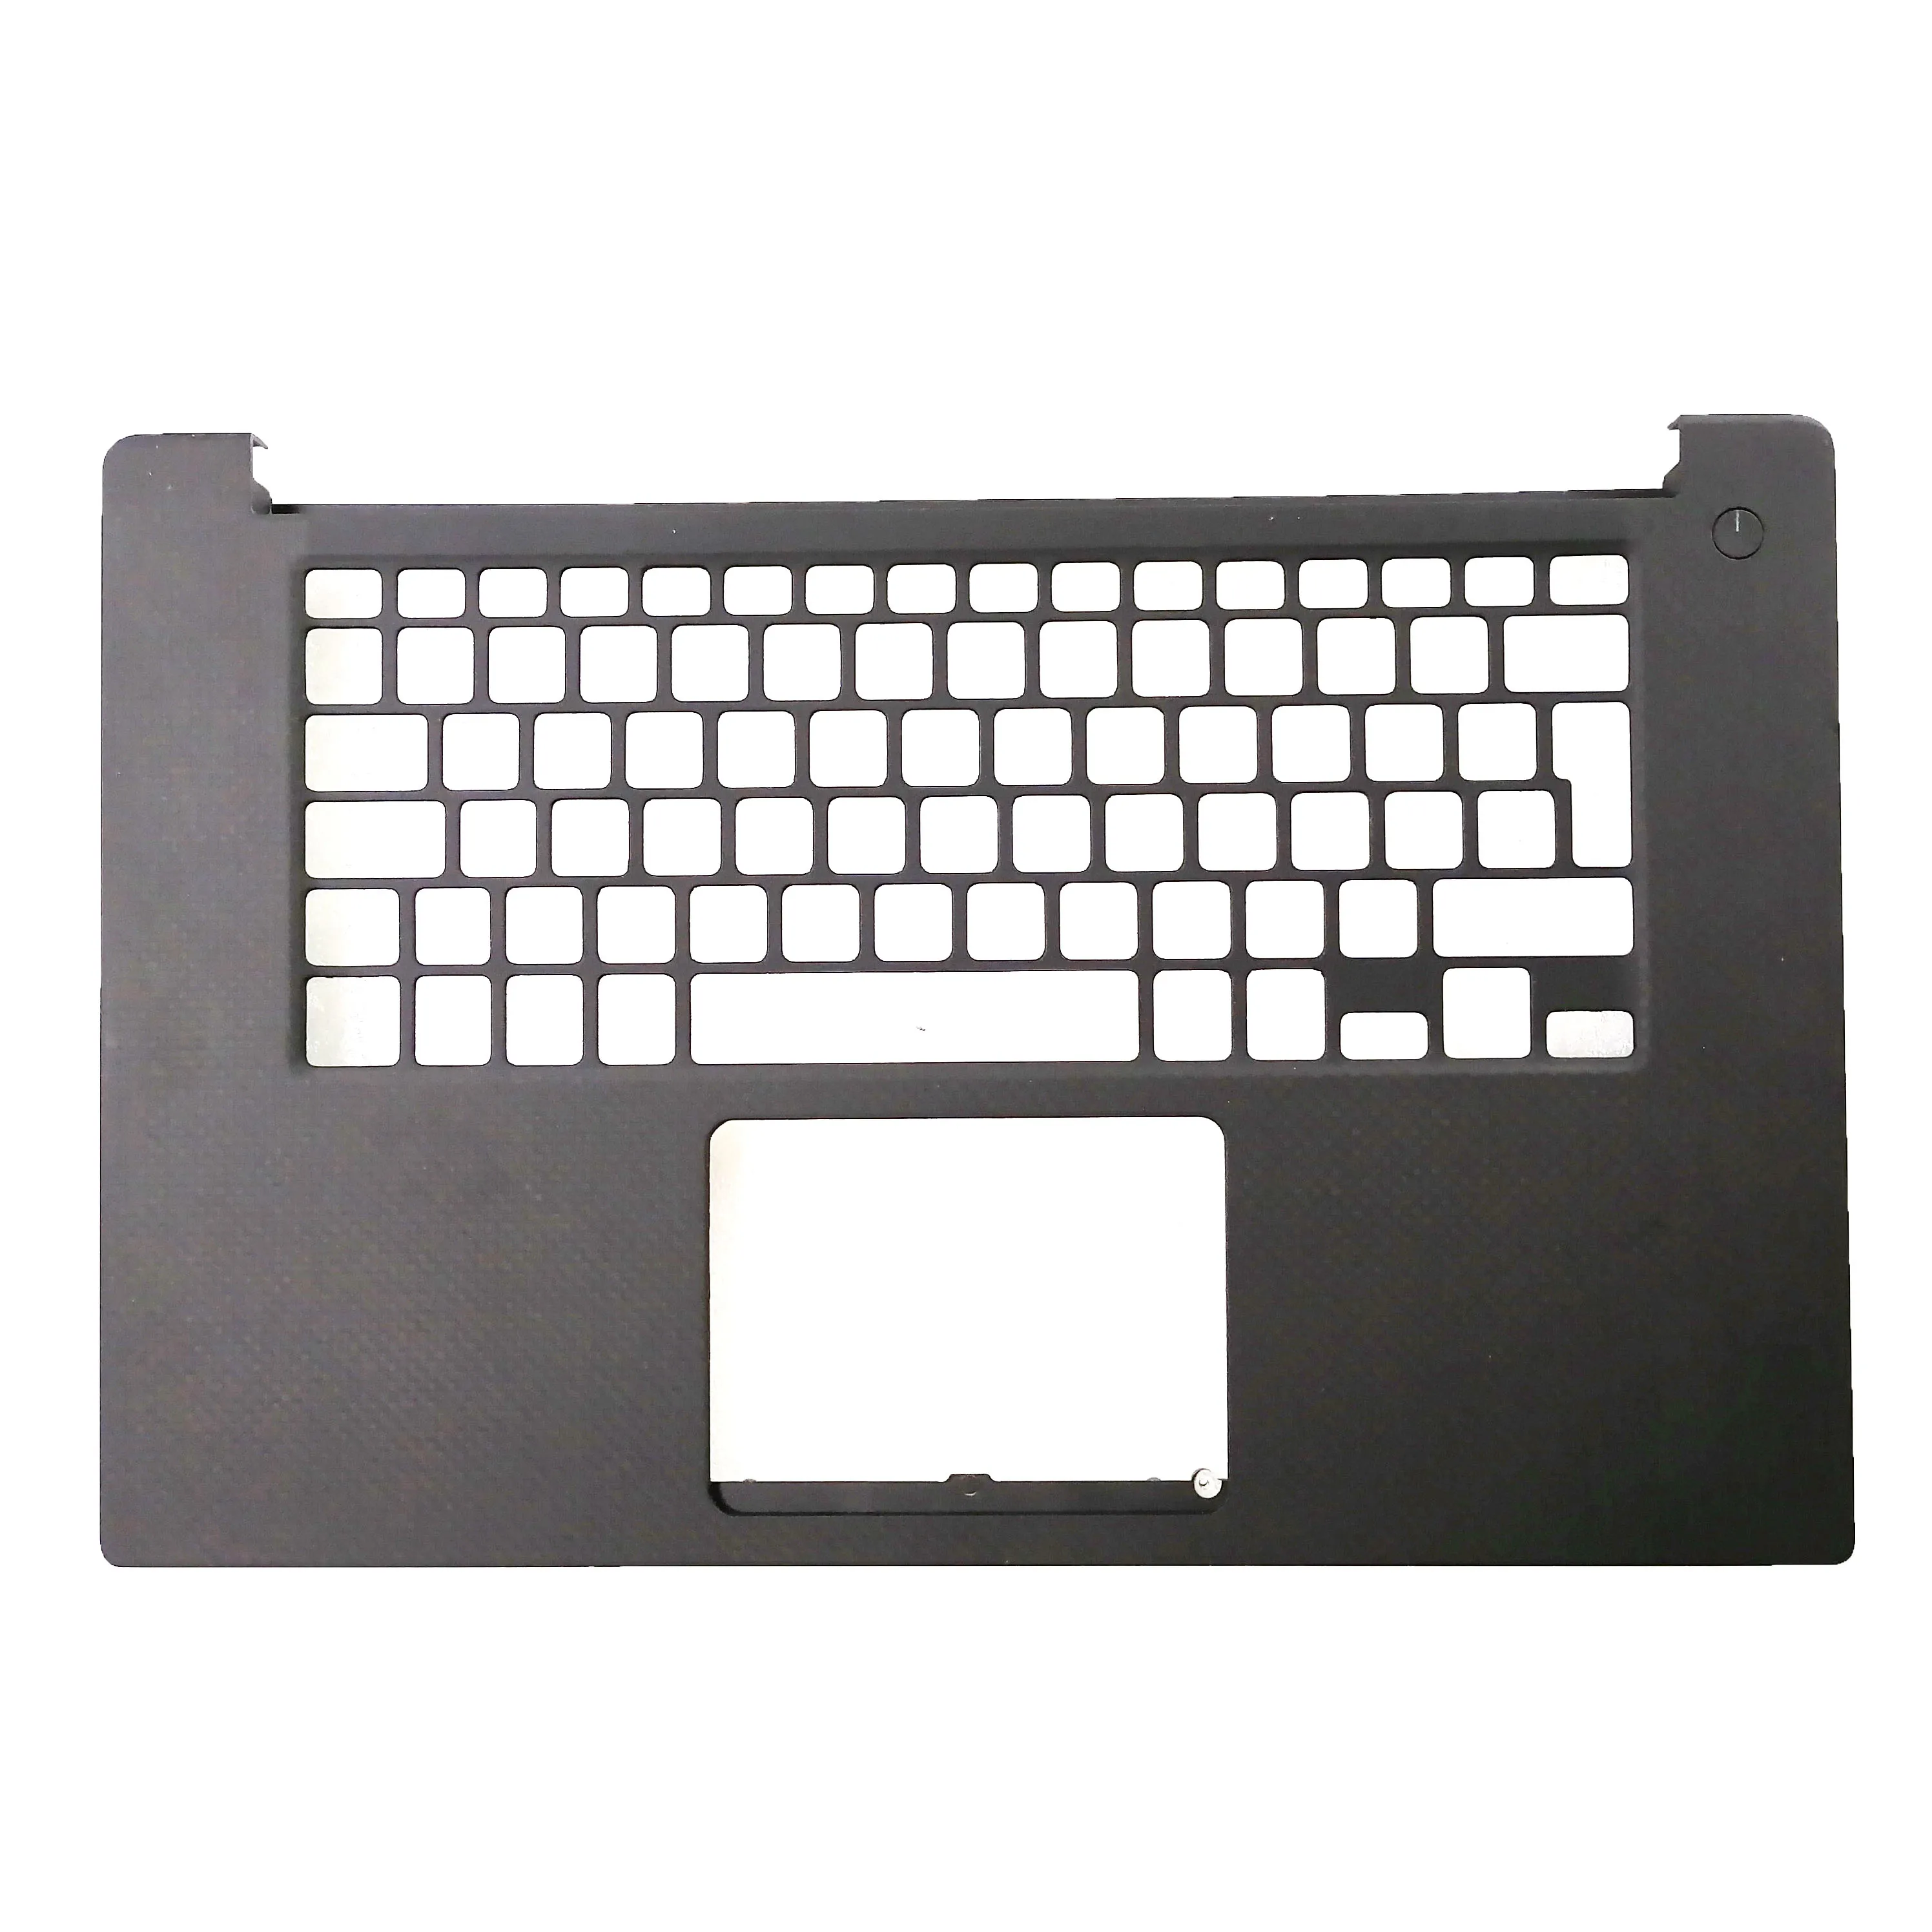 Neue Original Für DELL XPS 15 9550 Präzision 5510 M5510 P56F gehäuse Laptop Palmrest Fall Abdeckung 0D6CWH D6CWH Schwarz